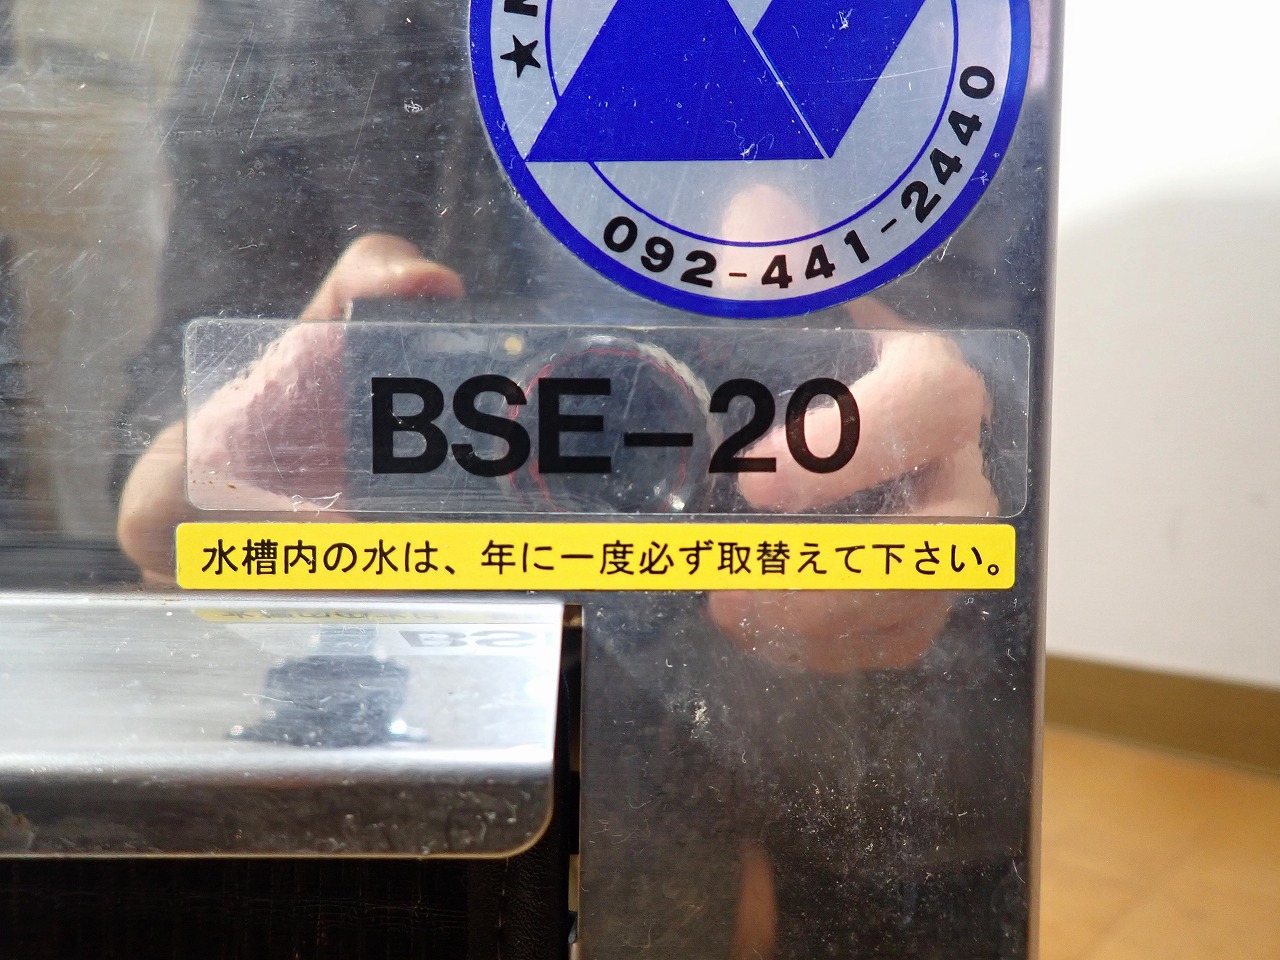 BSE-20